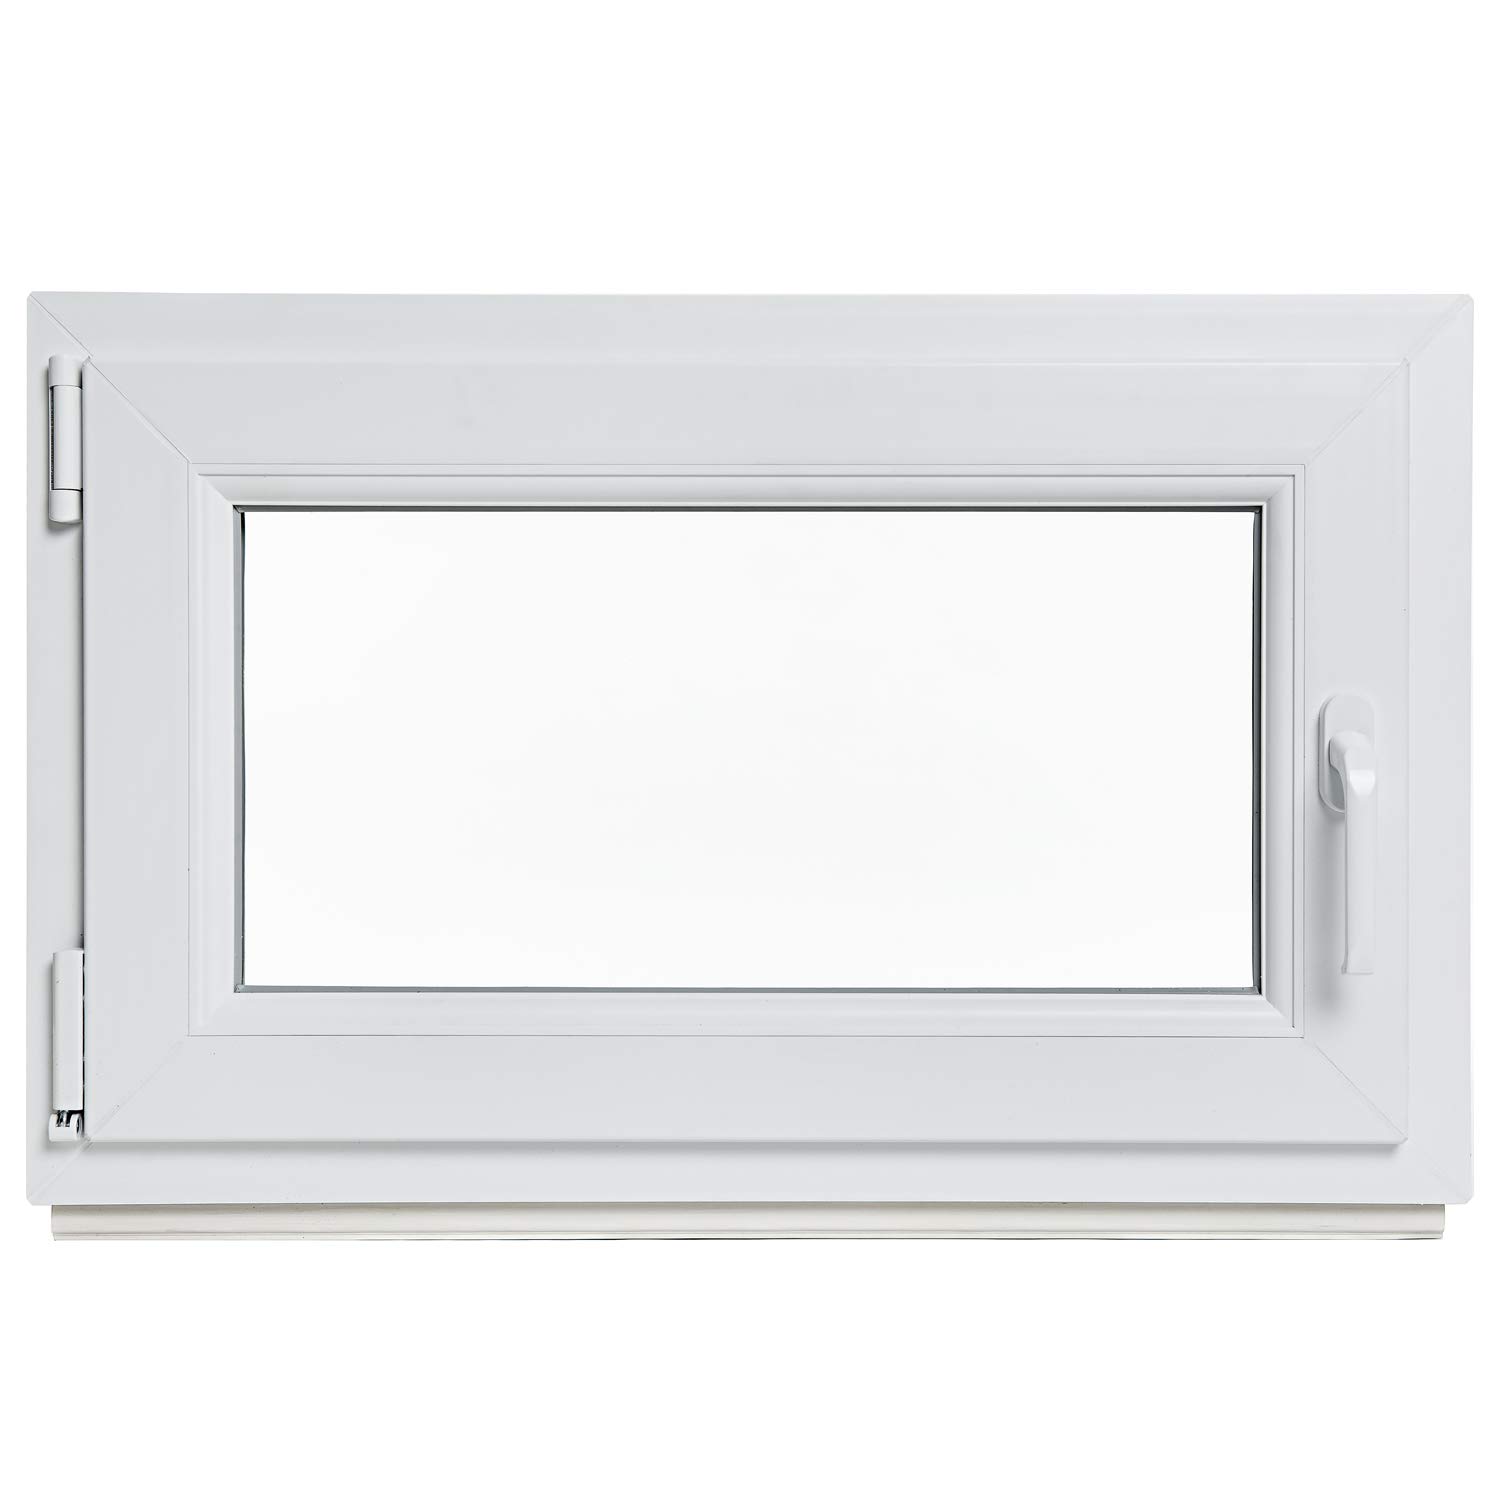 Kellerfenster - Kunststoff - Fenster - weiß - BxH: 90 x 40 cm - DIN rechts - 2-fach-Verglasung - Lagerware